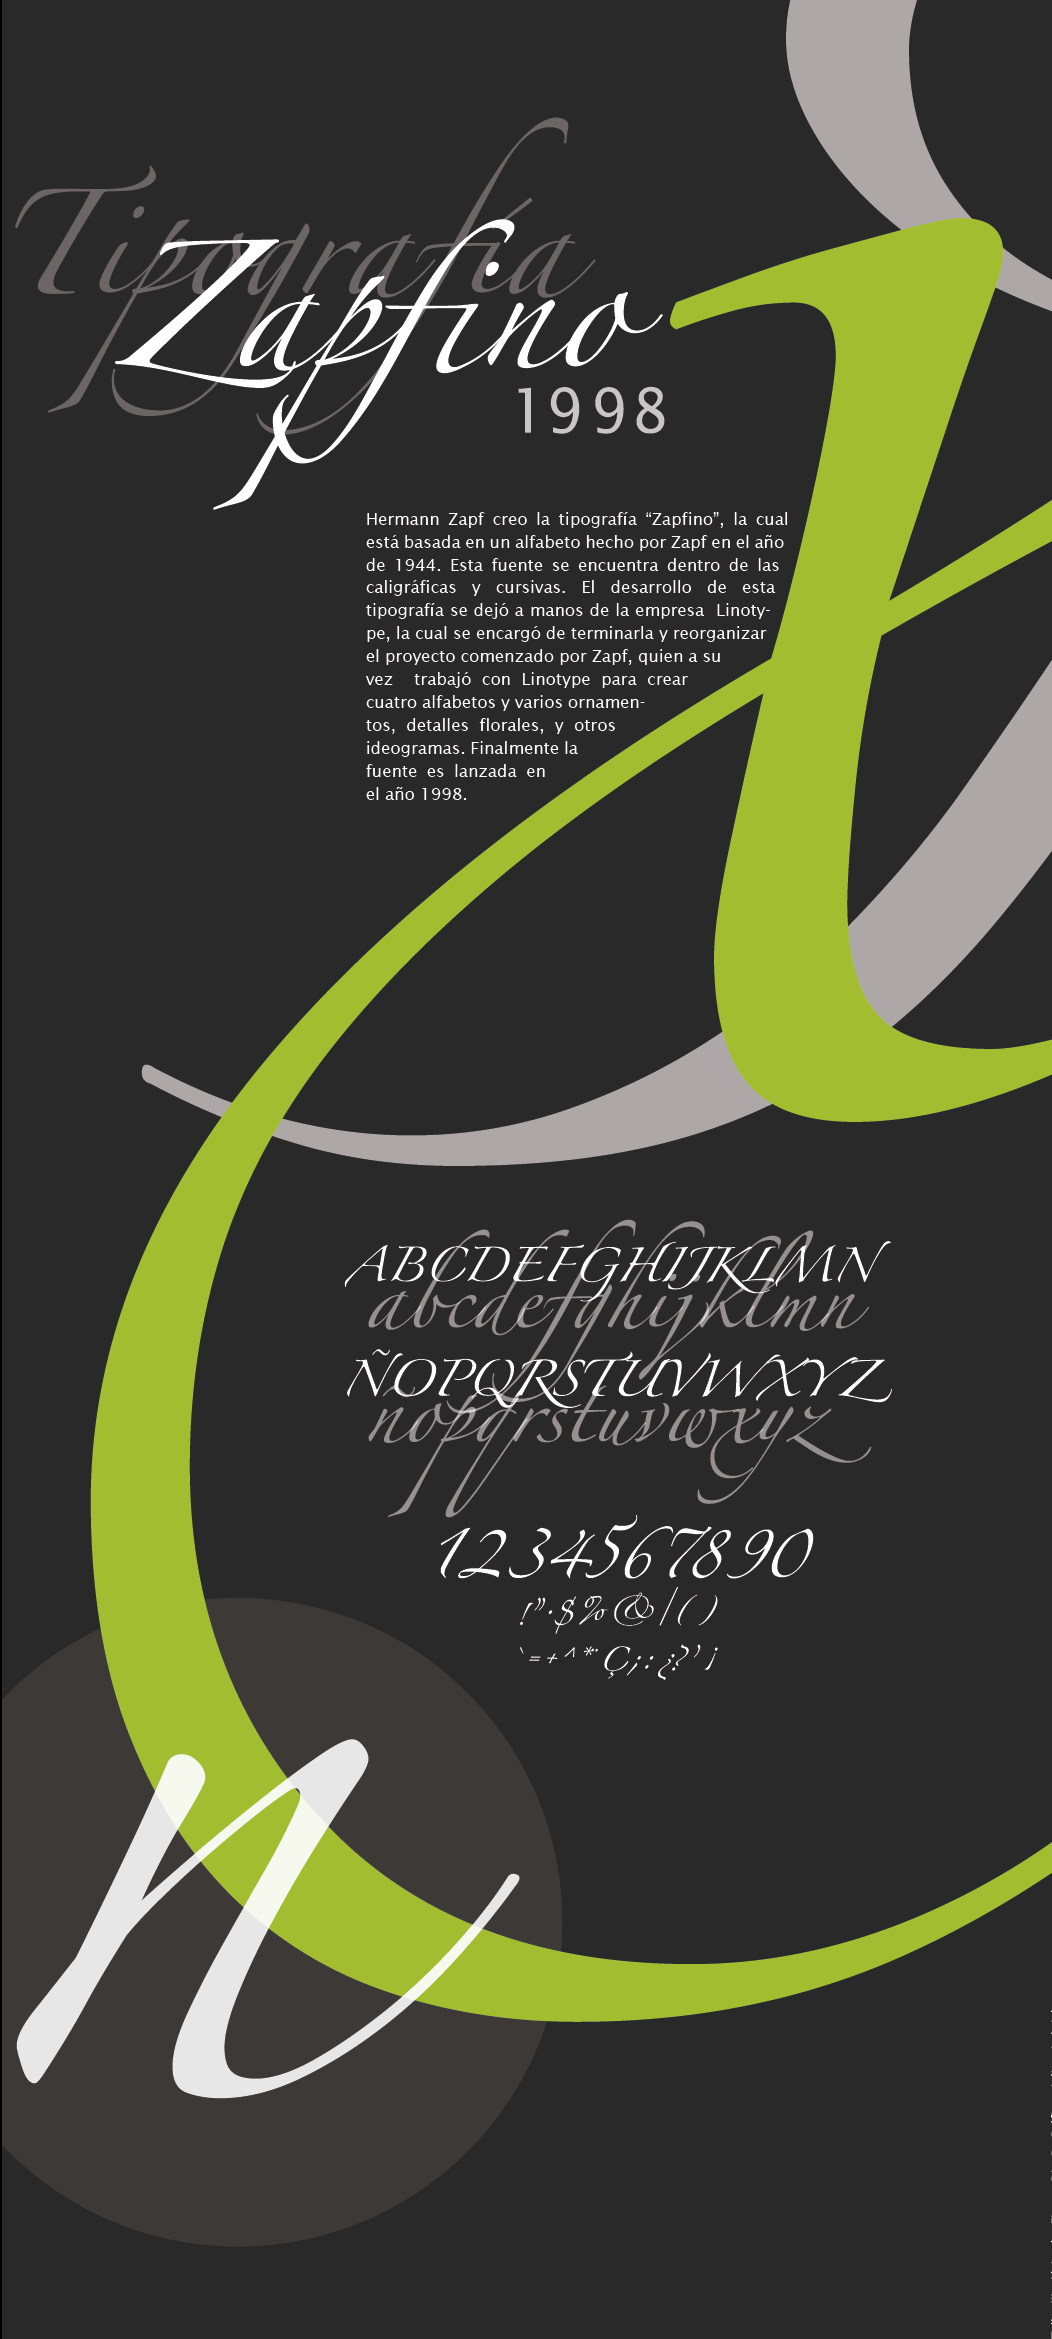 diseño gráfico tipografia editorial afiche zapfino hermann zapf